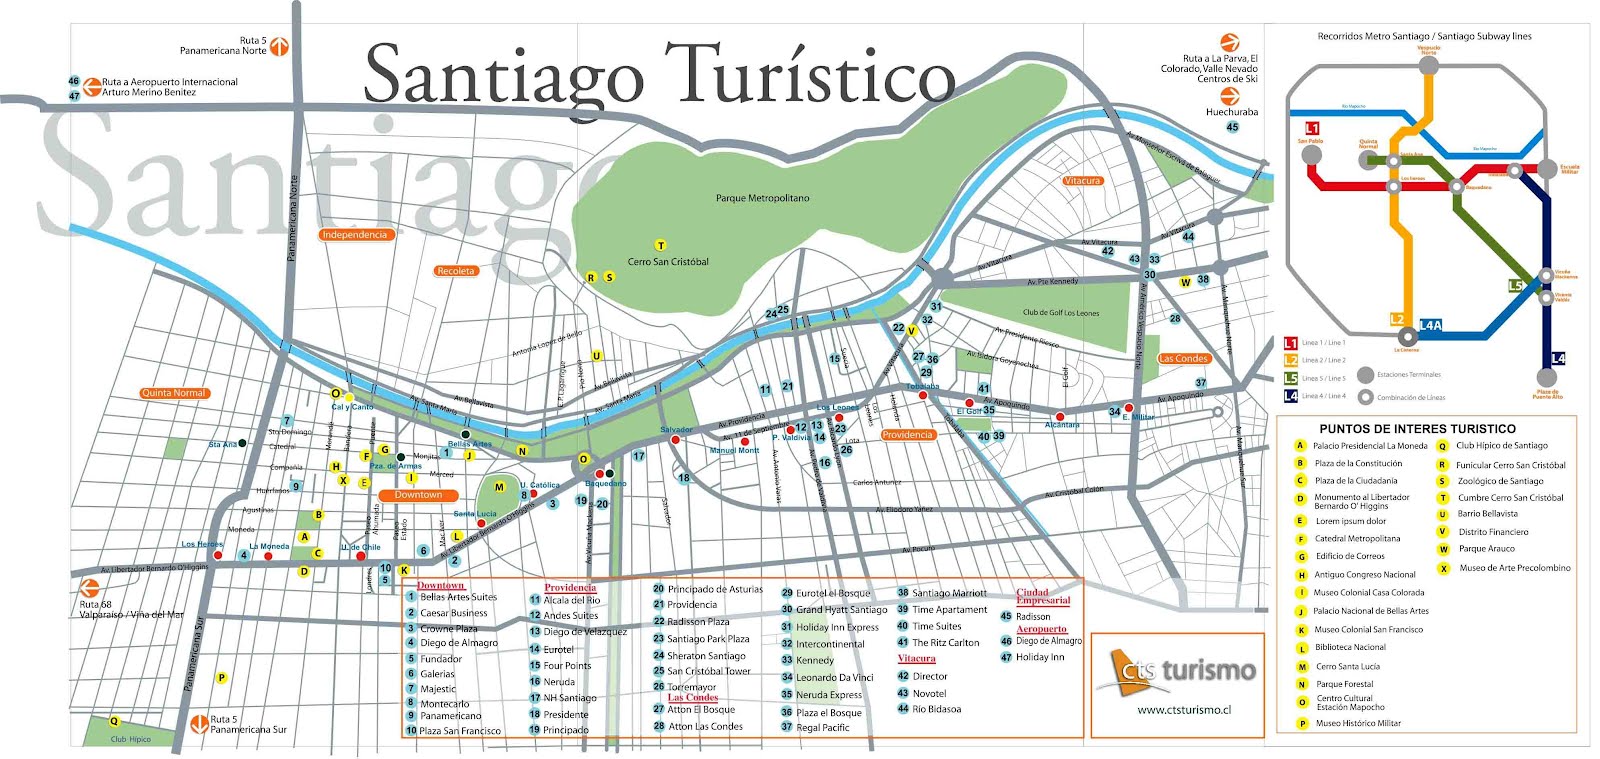 Mapas de Santiago - Chile | MapasBlog